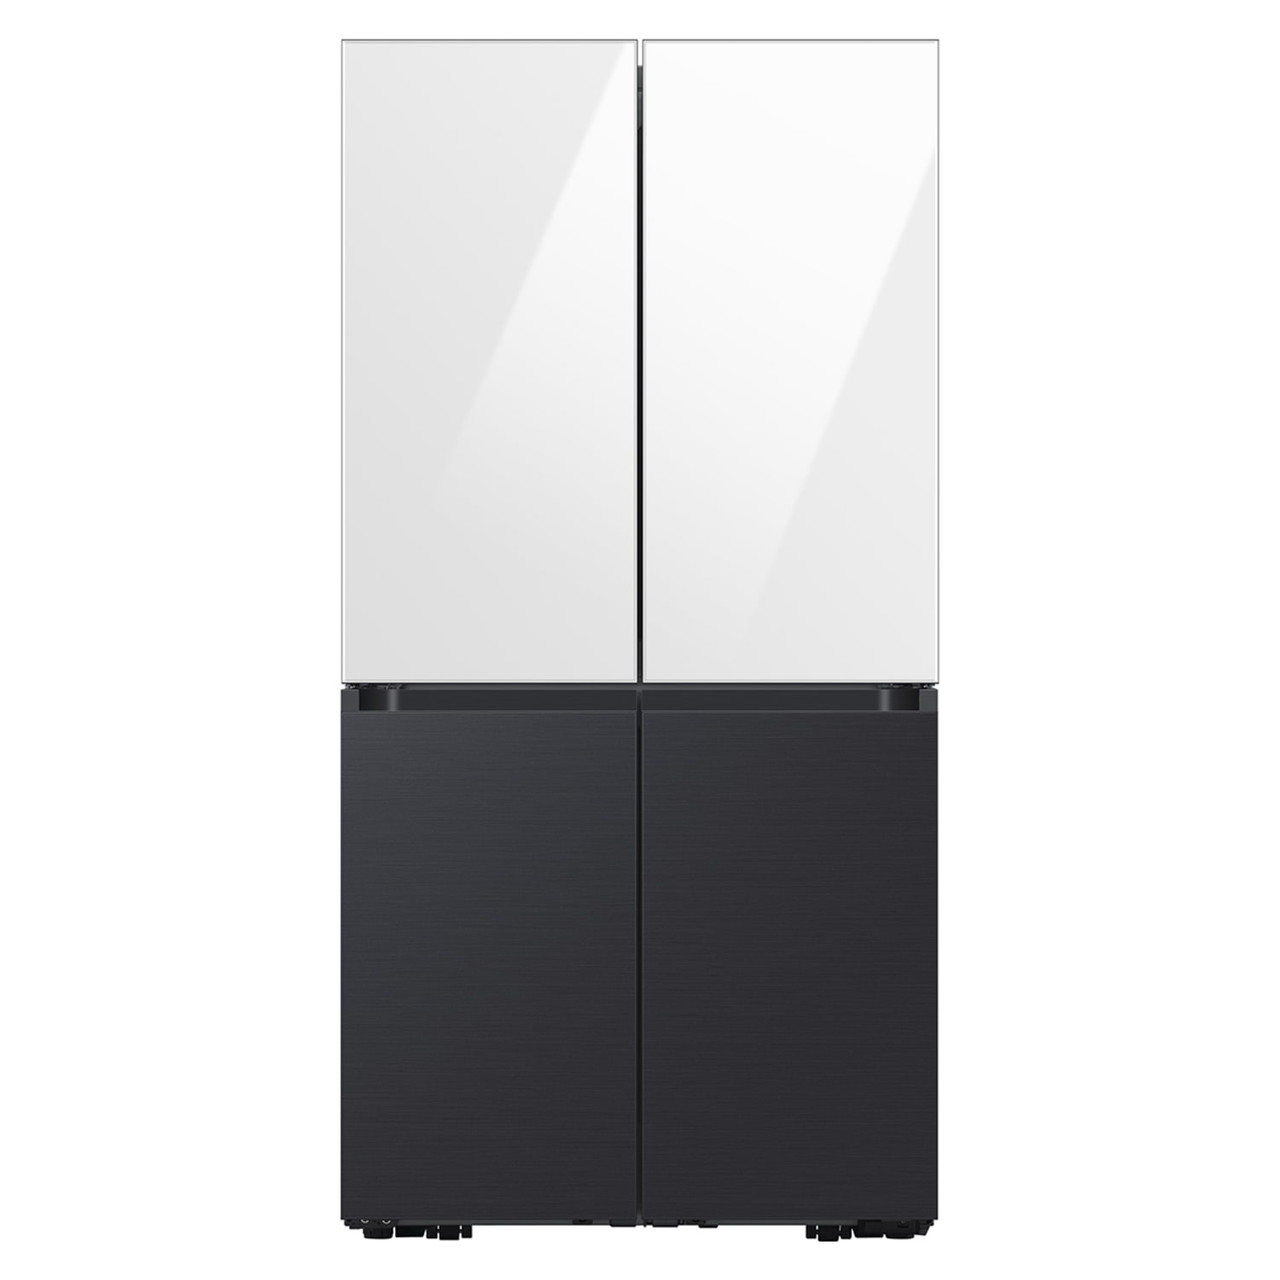 Samsung BESPOKE 4-Door Flex™ Refrigerator Panel in Matte Black Steel - Bottom Panel